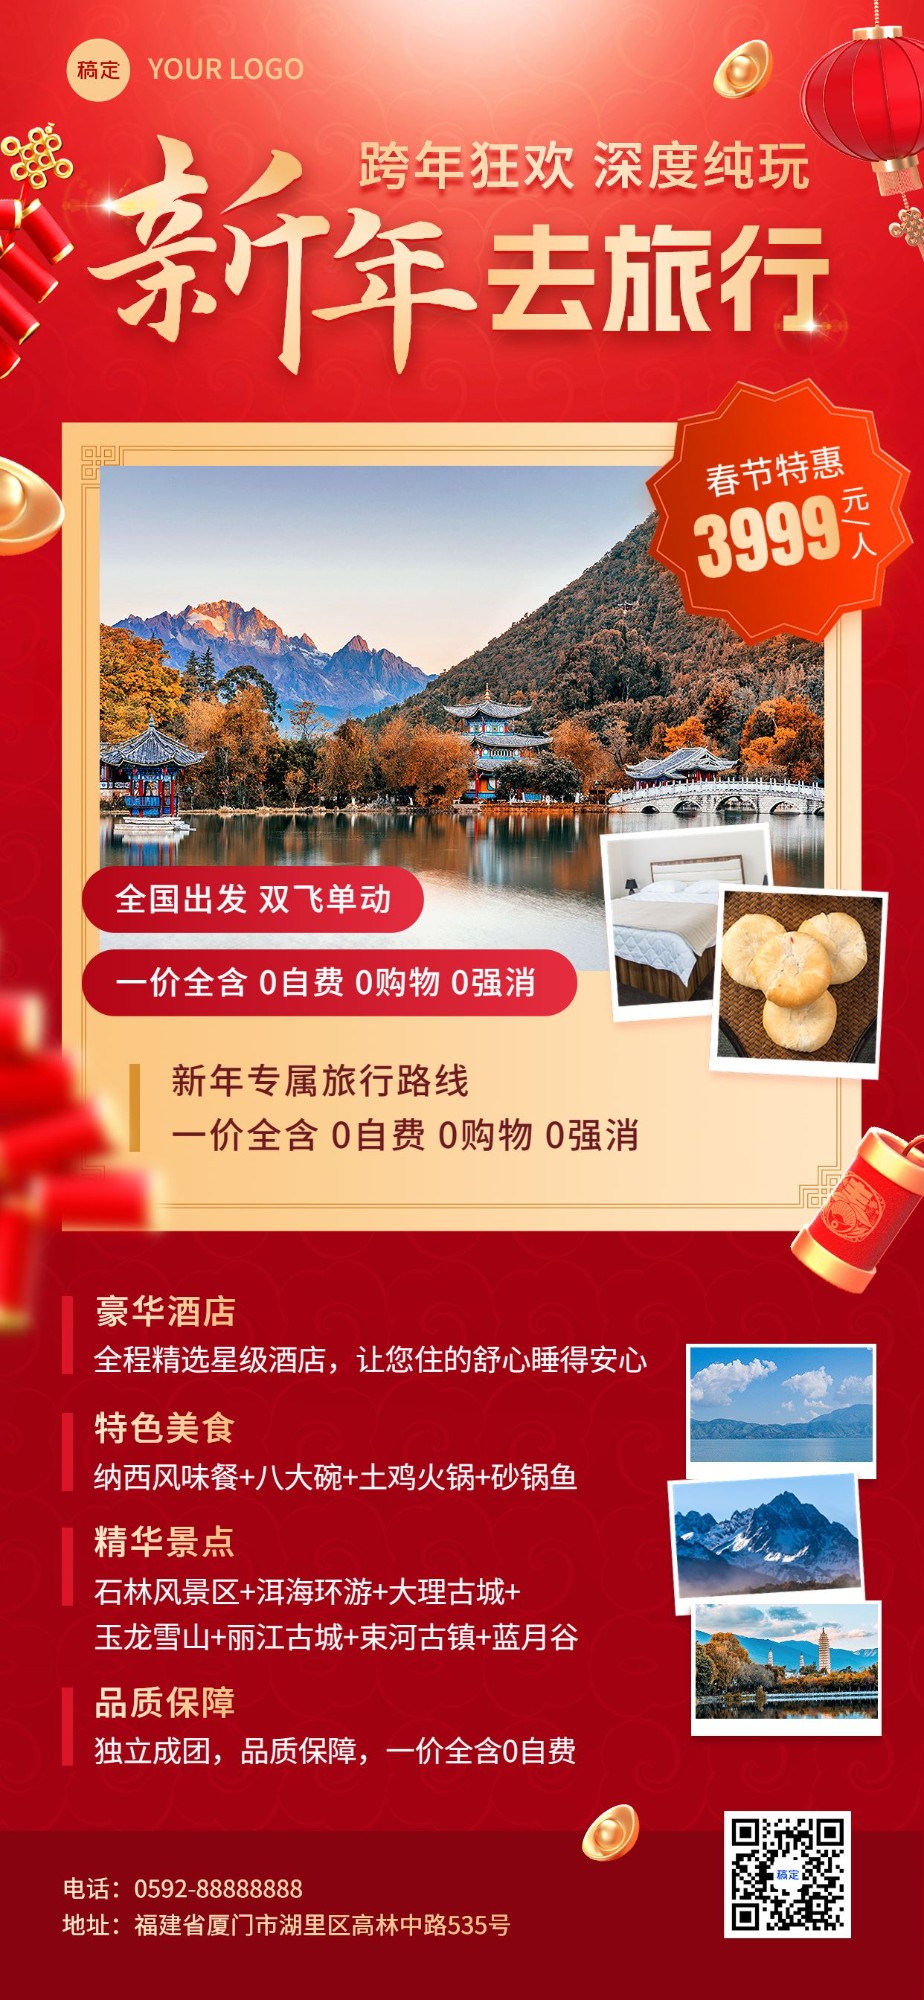 旅游出行春节旅行社云南大理线路营销宣传全屏竖版海报